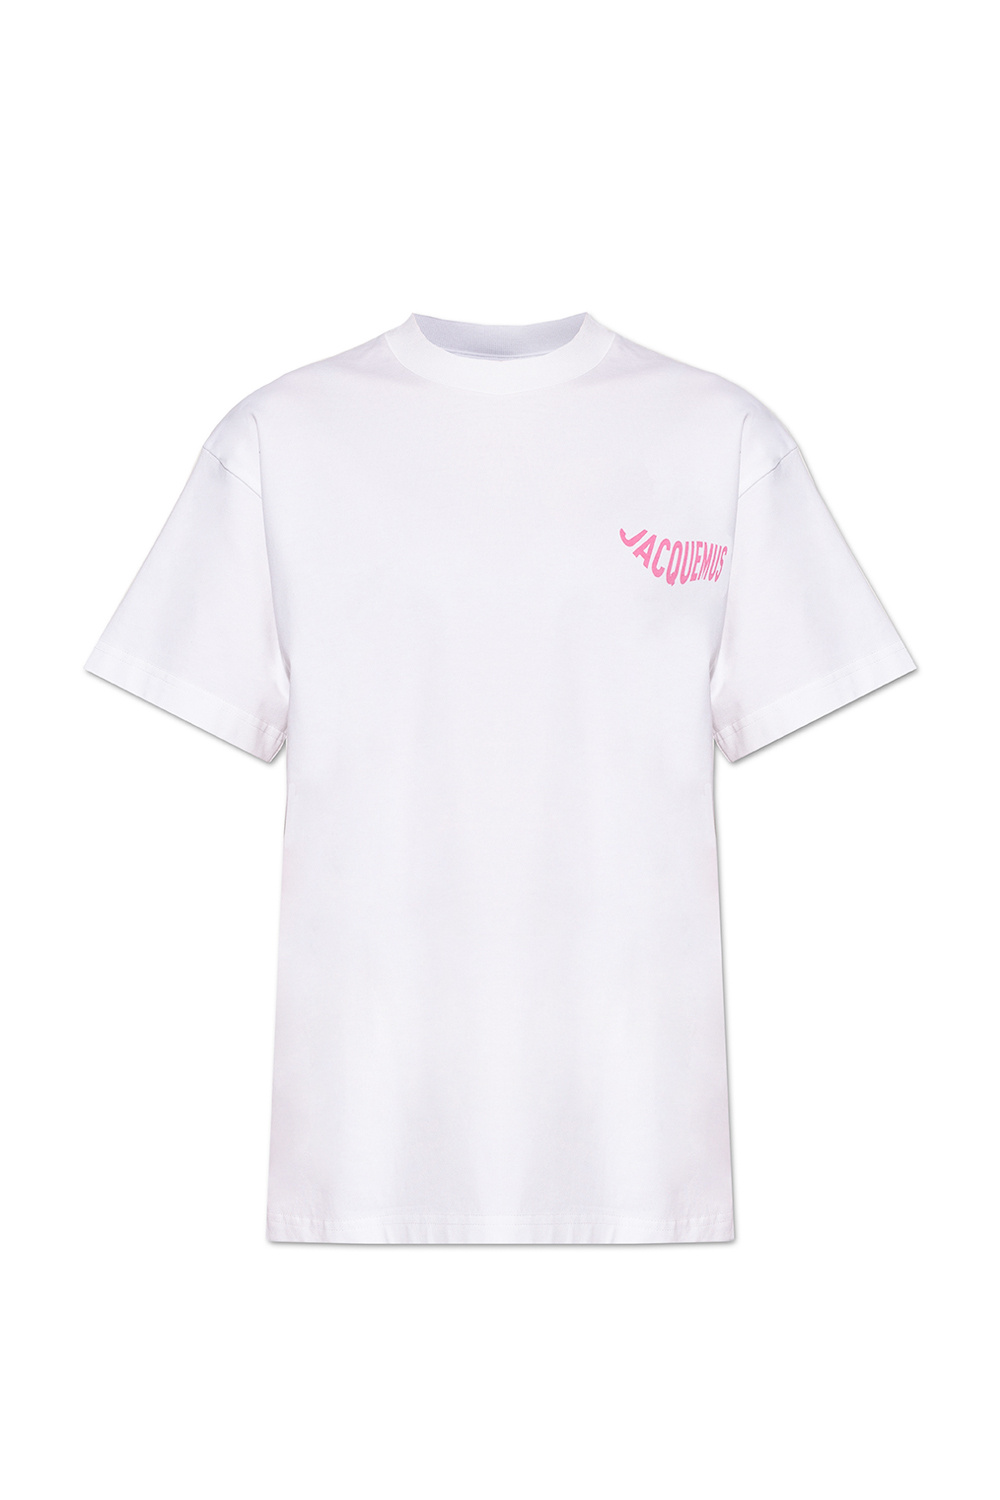 Jacquemus Logo T-shirt | Women's Clothing | IetpShops